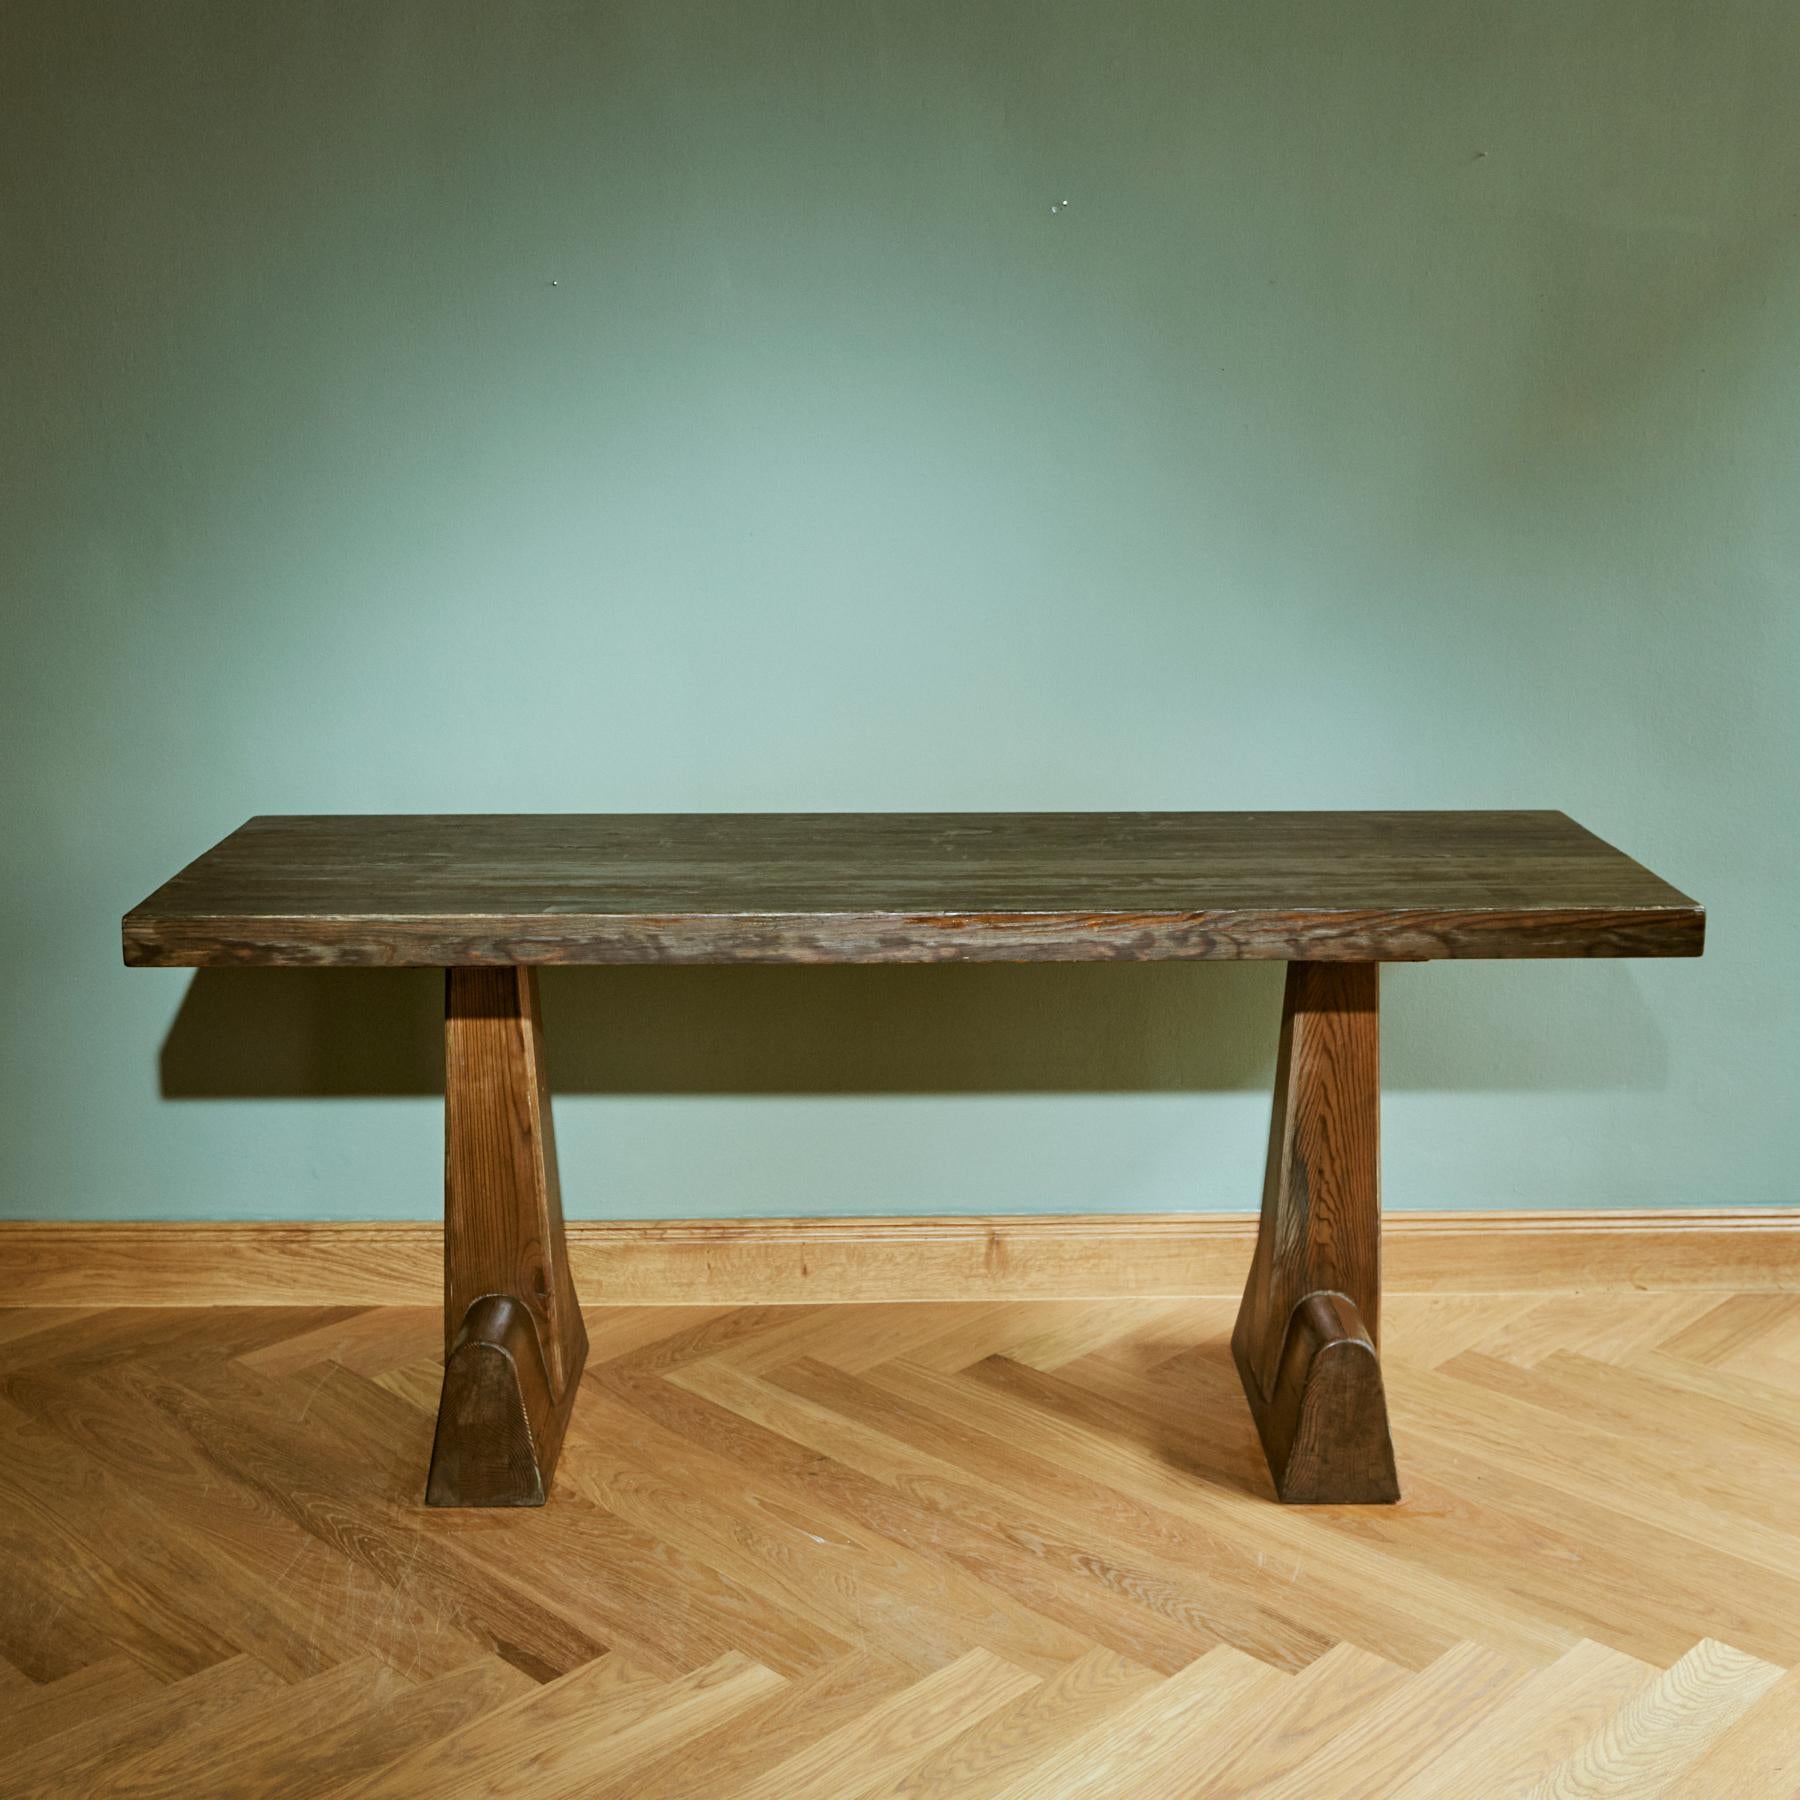 Produite par AB Nordiska Kompaniet, cette table appartient à la ligne de mobilier de cabine moderniste de Hjorth des années 1930. 

L'architecte et designer industriel Axel Einar Hjorth (1888 - 1959) était l'une des figures de proue de la culture